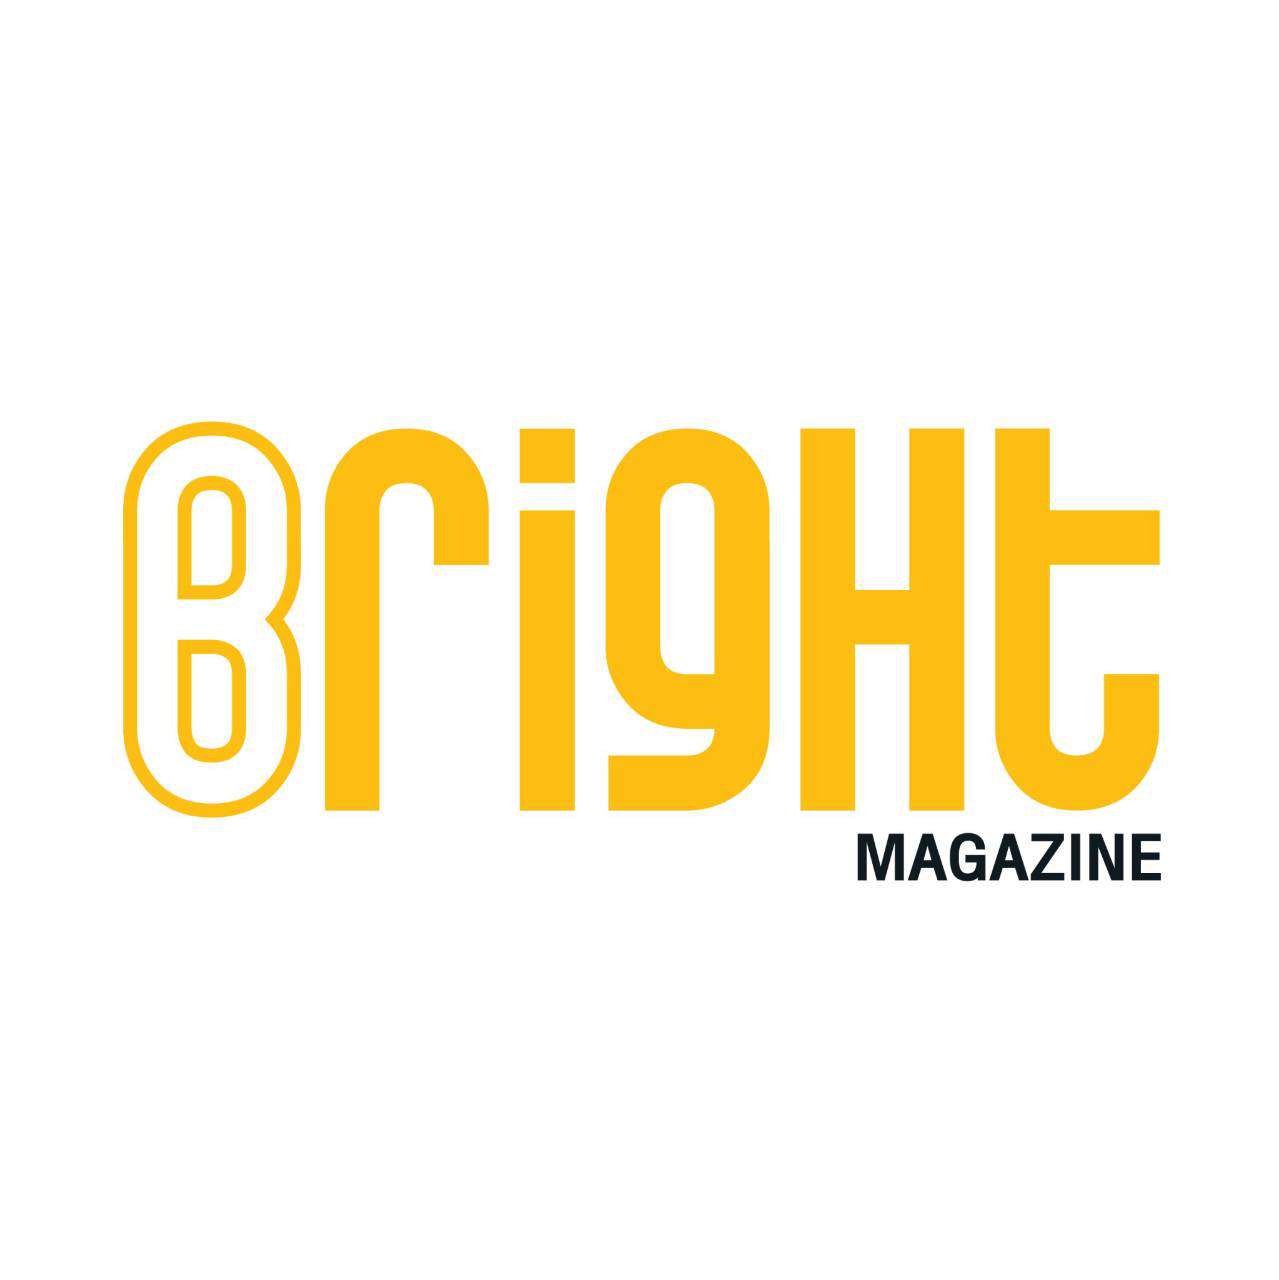 Bright Magazine Online